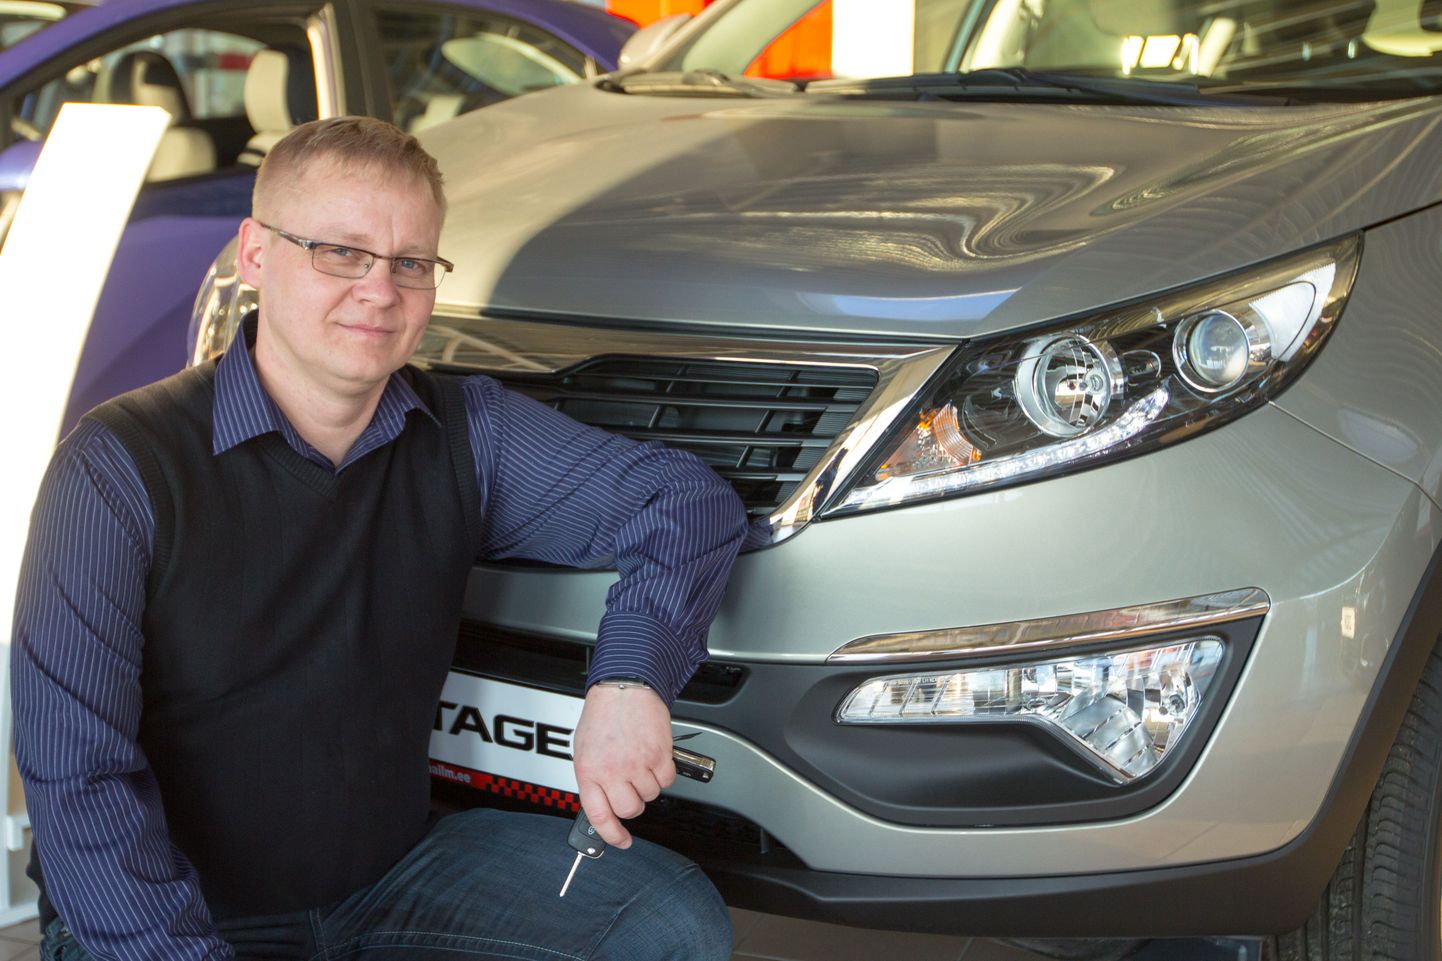 Valga Automaailma juhataja Tiit Urmi sõnul oli möödunud aasta firmale edukas. Kokku said uue omaniku 60 autot, neist 36 Peugeot´d ja 24 Kiat.